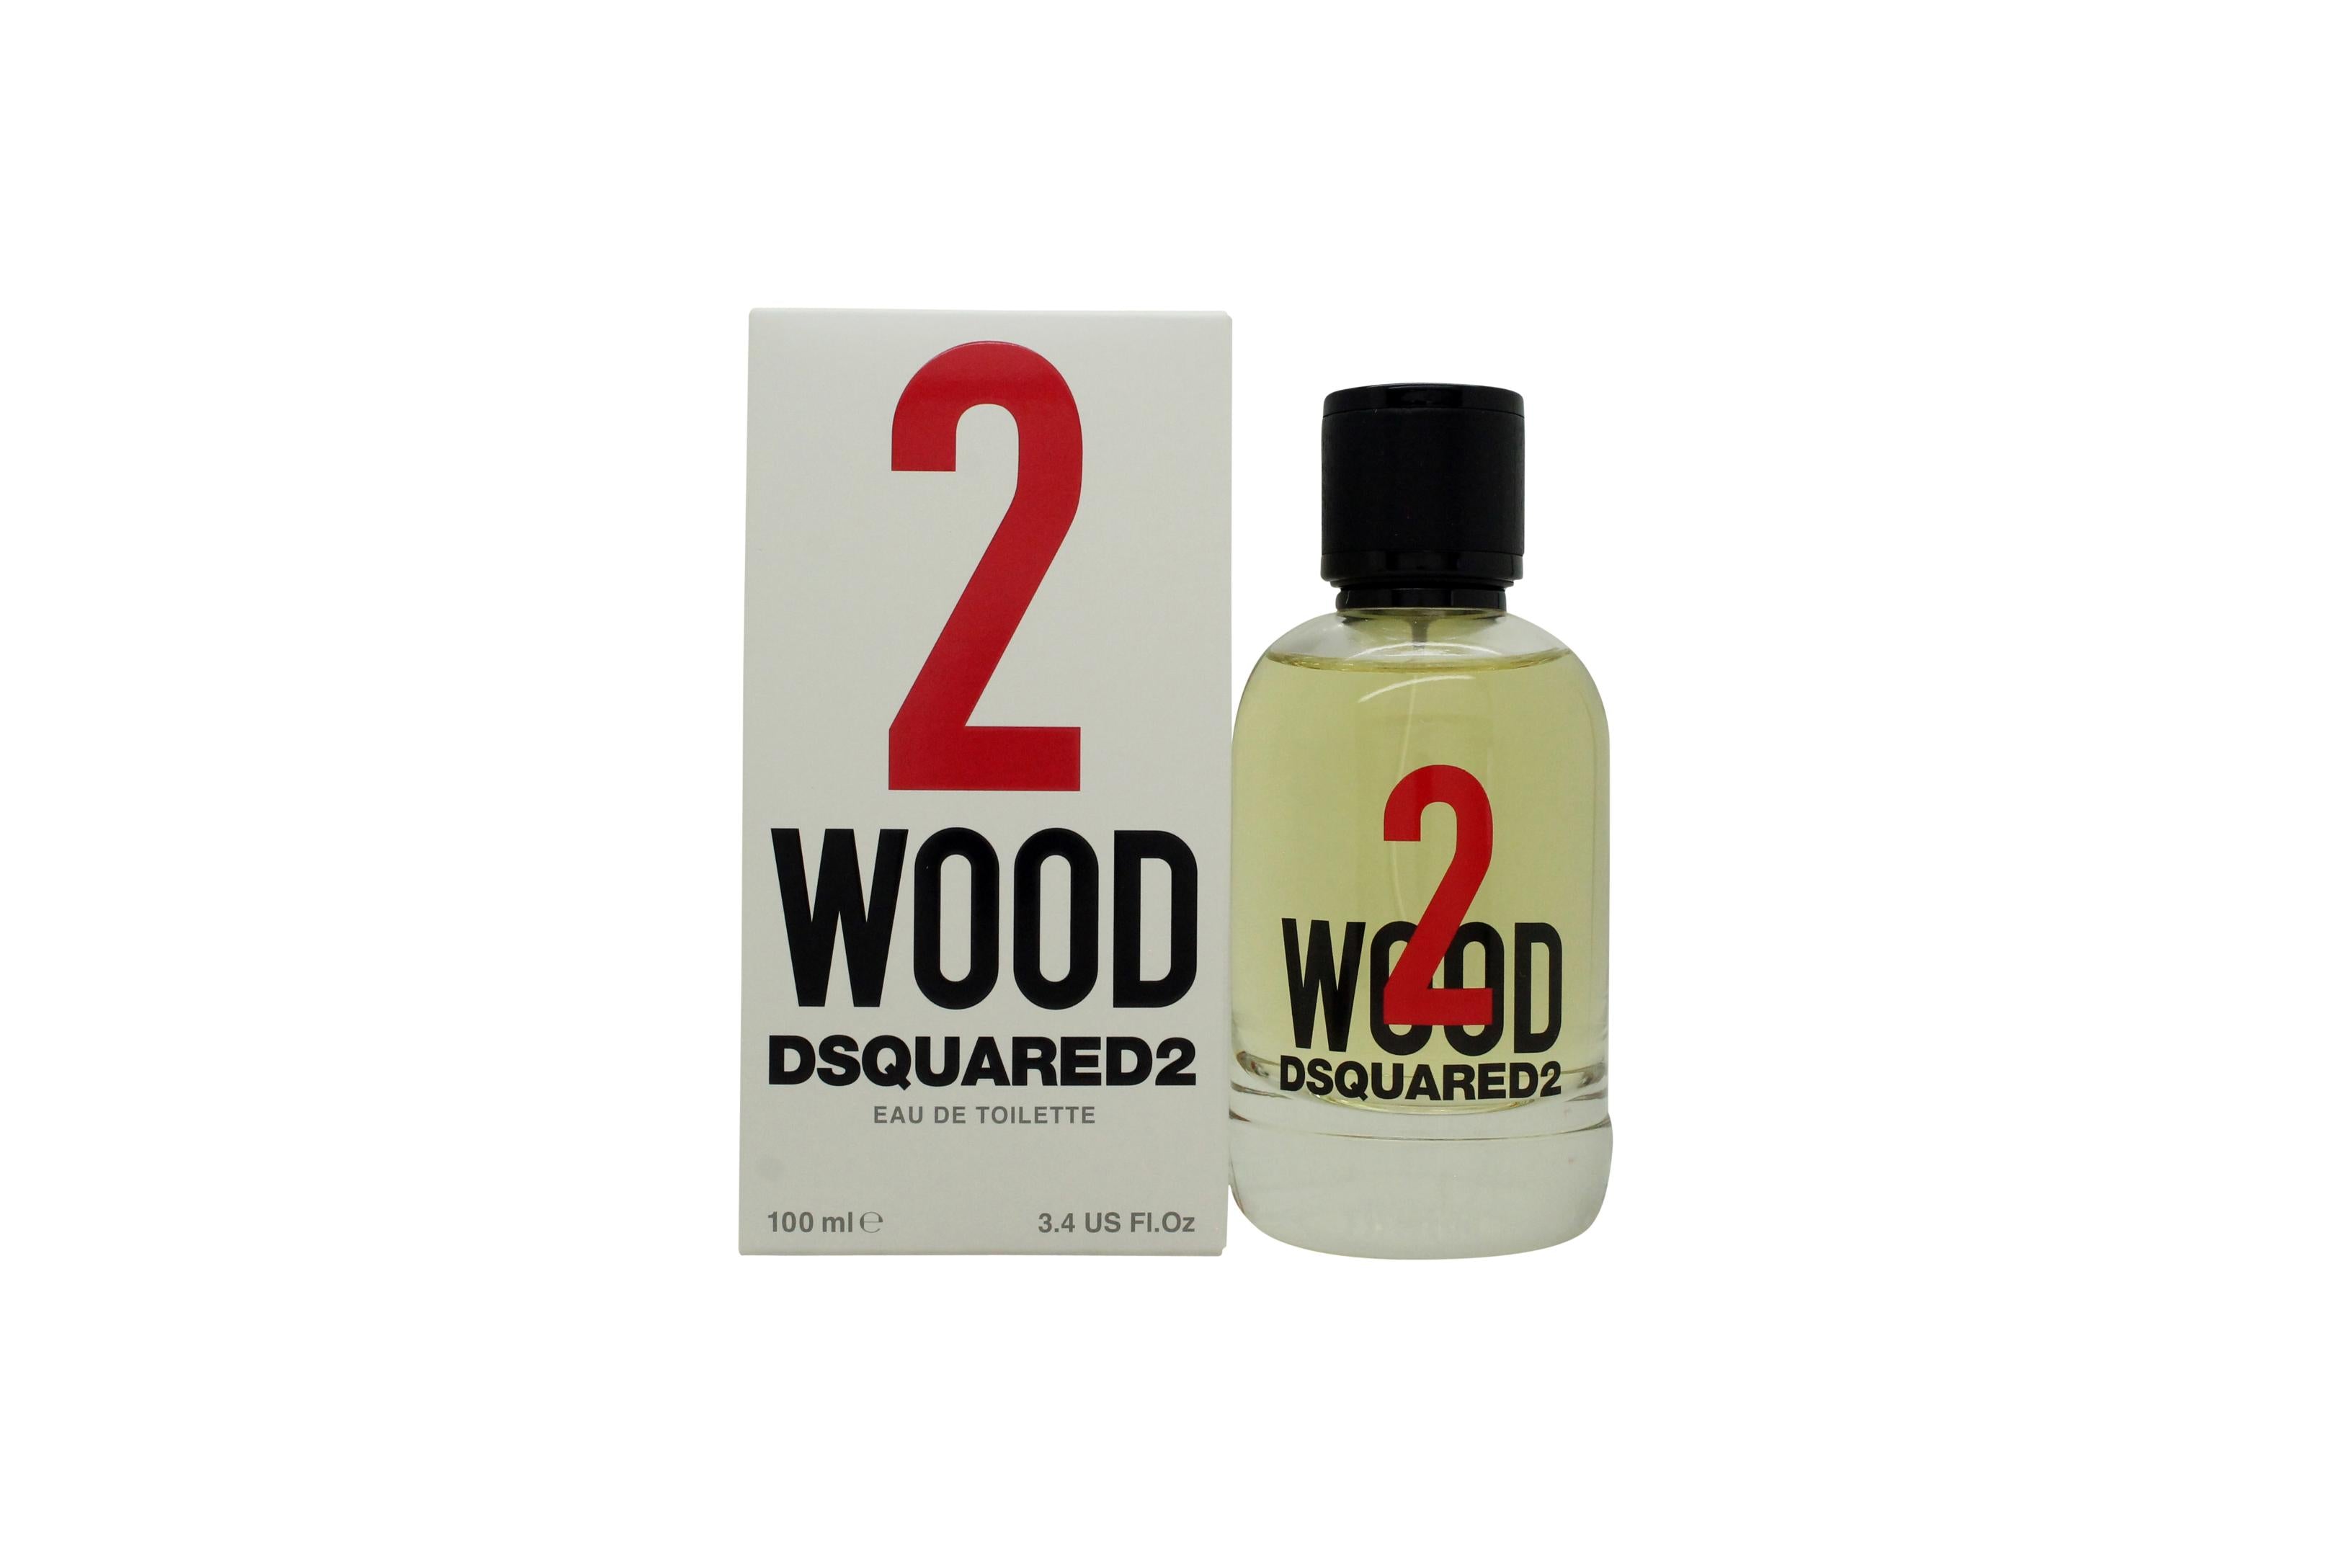 View DSquared² 2 Wood Eau de Toilette 100ml Spray information